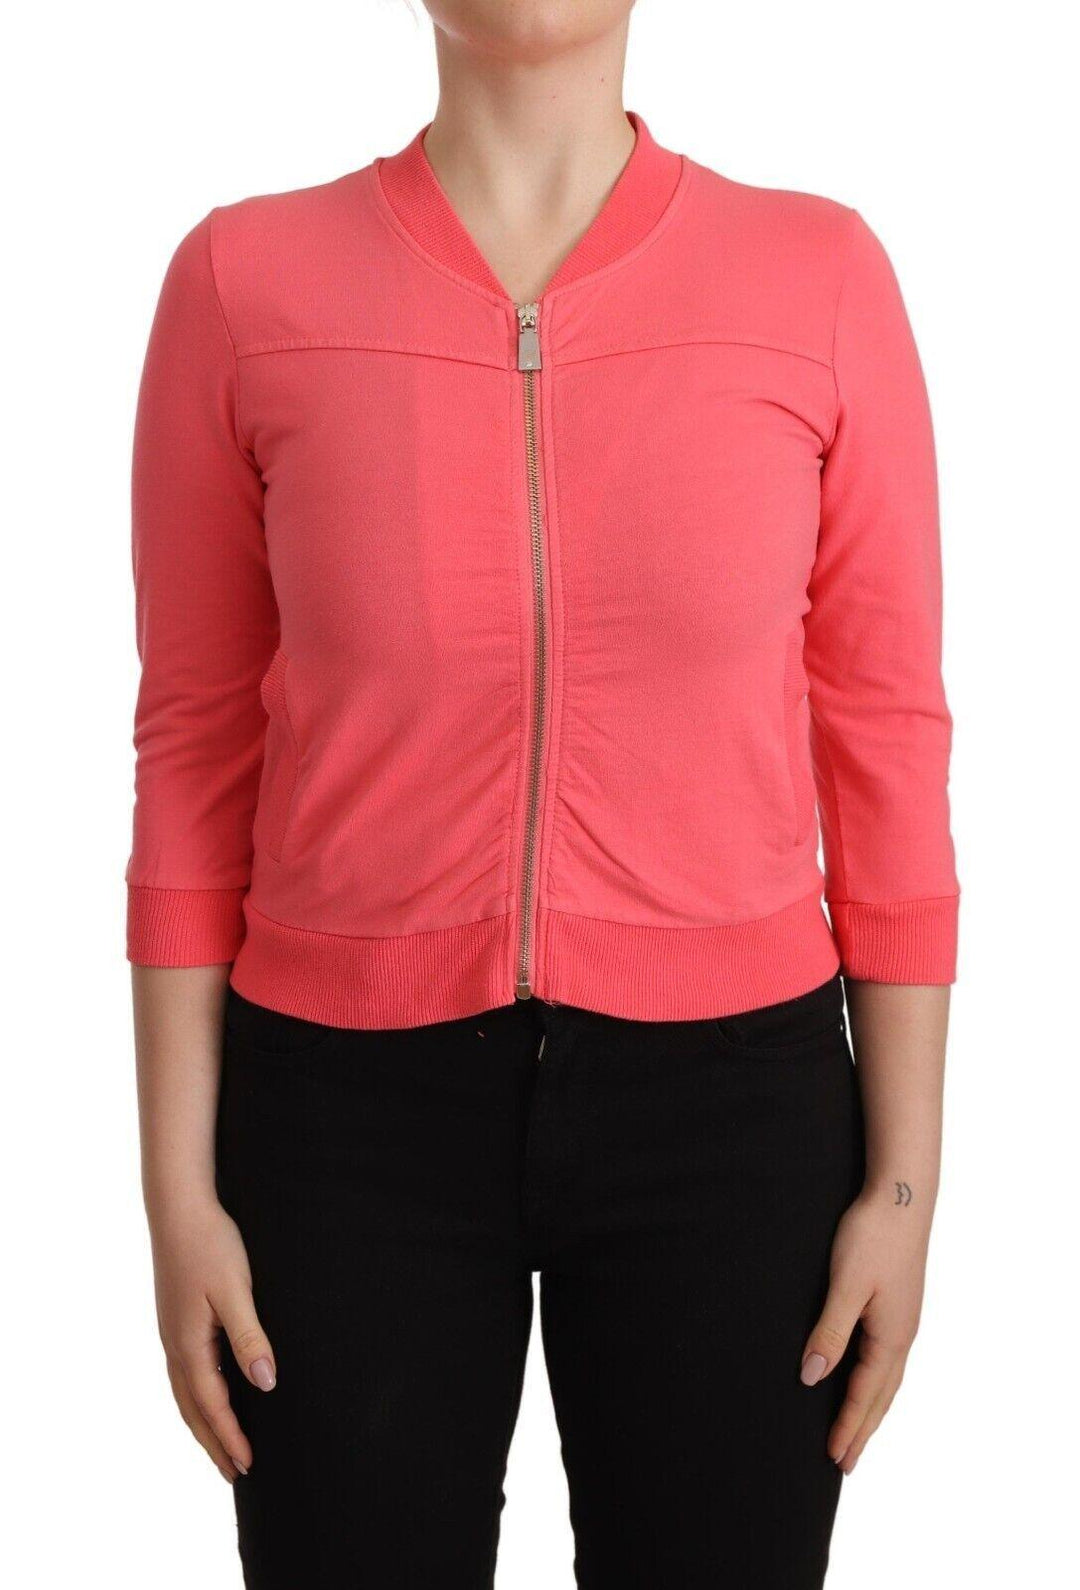 Blumarine Pink 3/4 Sleeve Zip Embellished Sweater - Ellie Belle